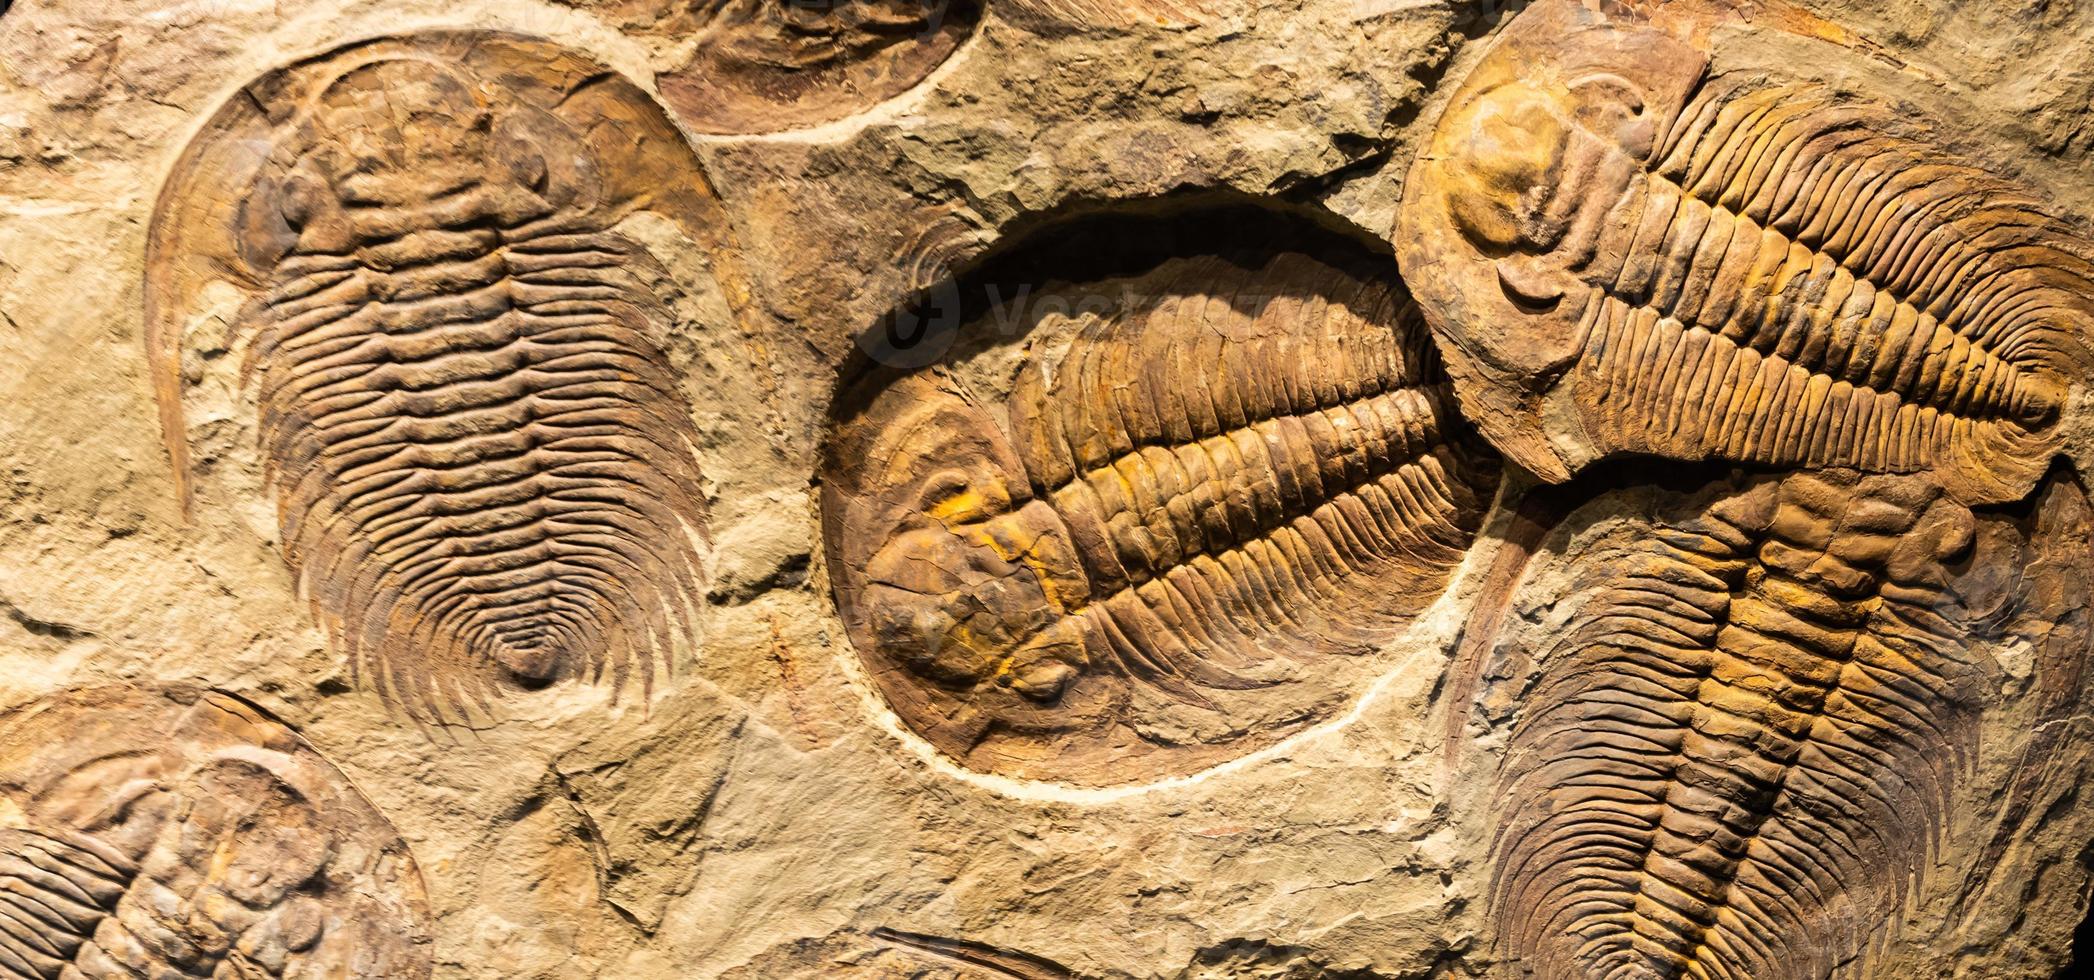 Fossil von Trilobit - - Acadoparadoxide briareus - - uralt versteinert Gliederfüßer auf Felsen. foto